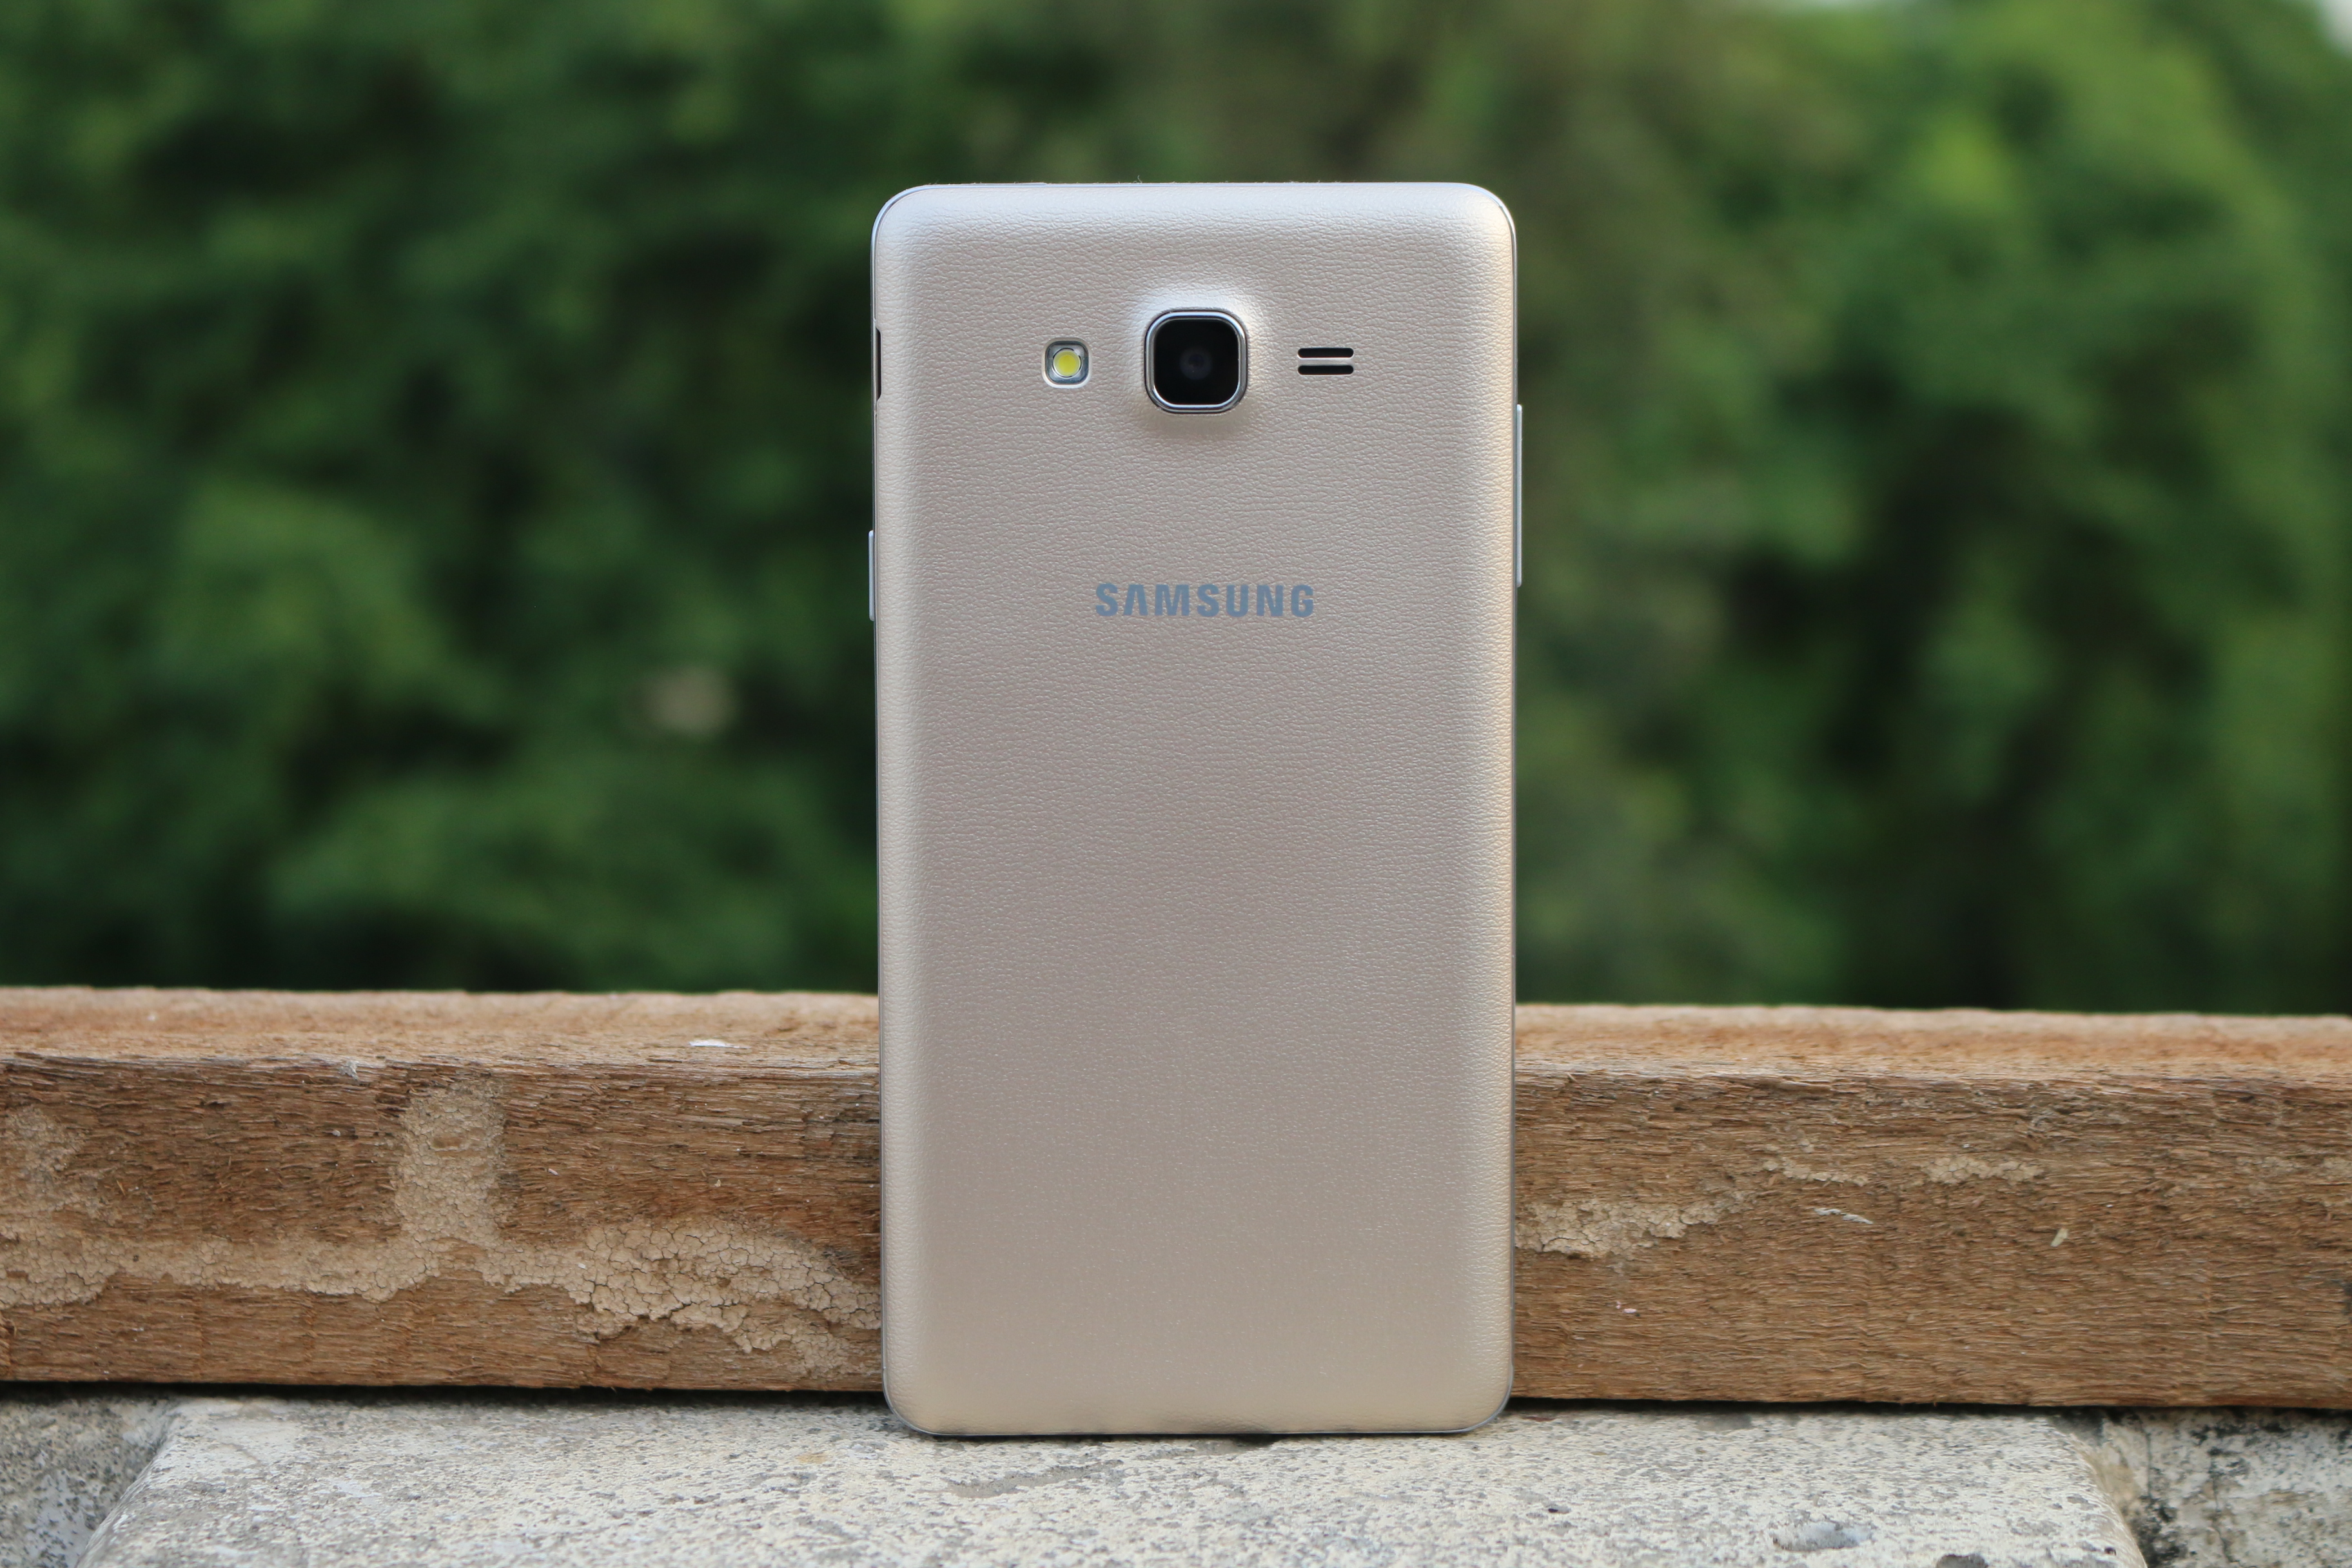 Pogosta vprašanja, prednosti in slabosti, uporabniška vprašanja in odgovori o Samsung Galaxy On7 Pro